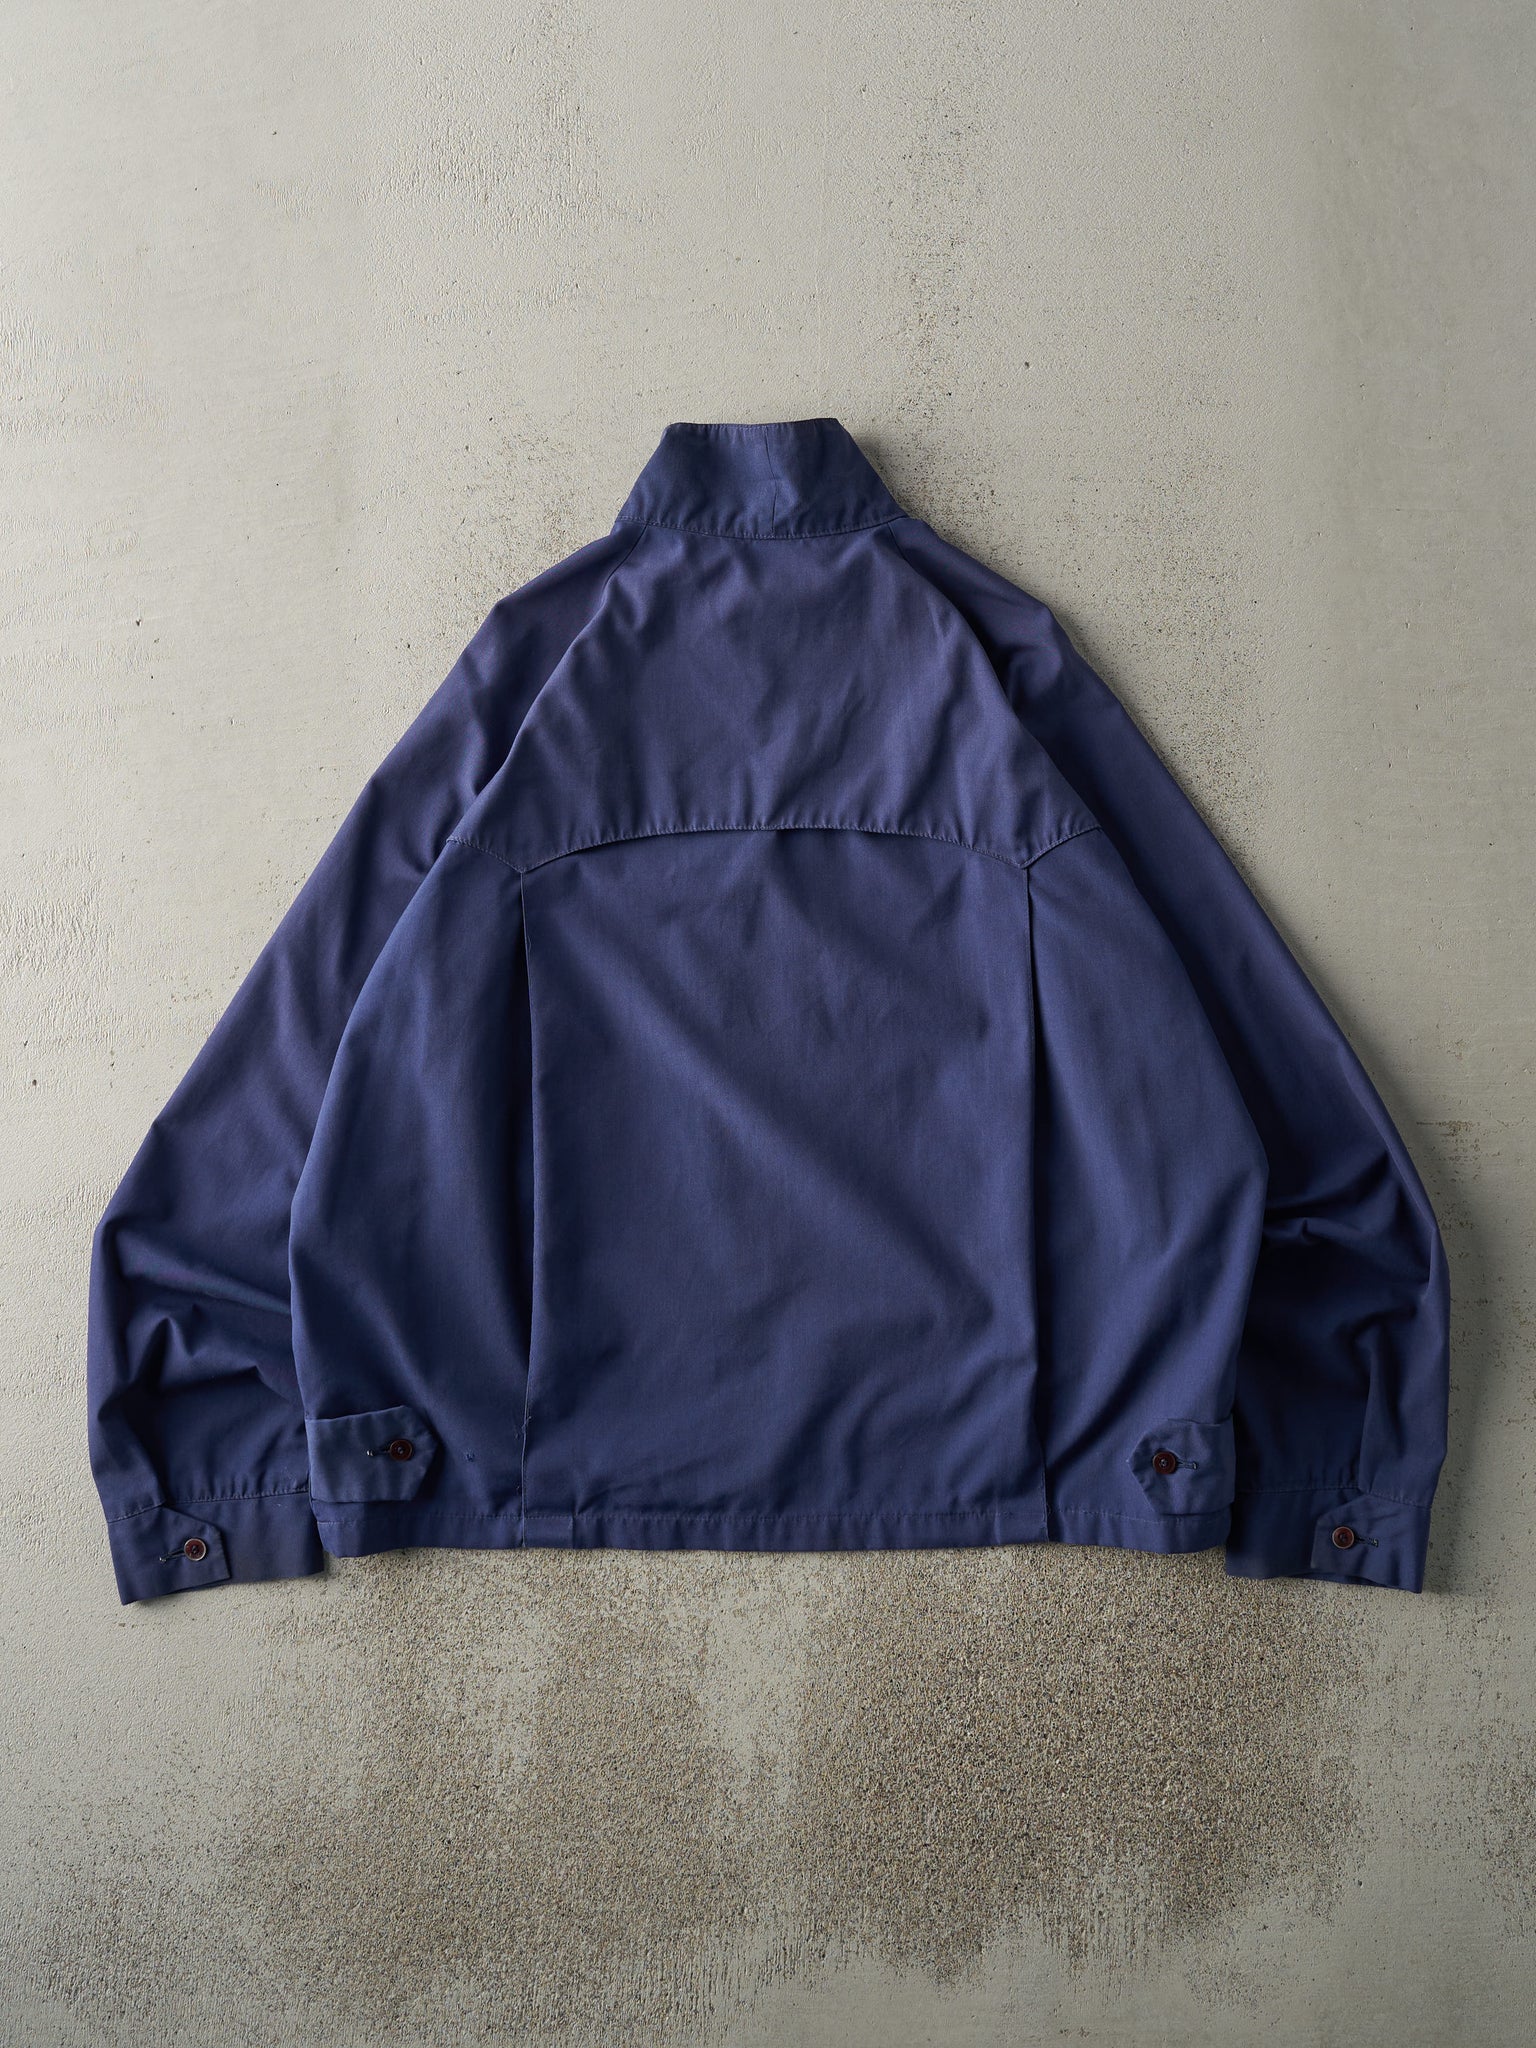 Vintage 80s Navy Blue Paramount Harrington Jacket (L)